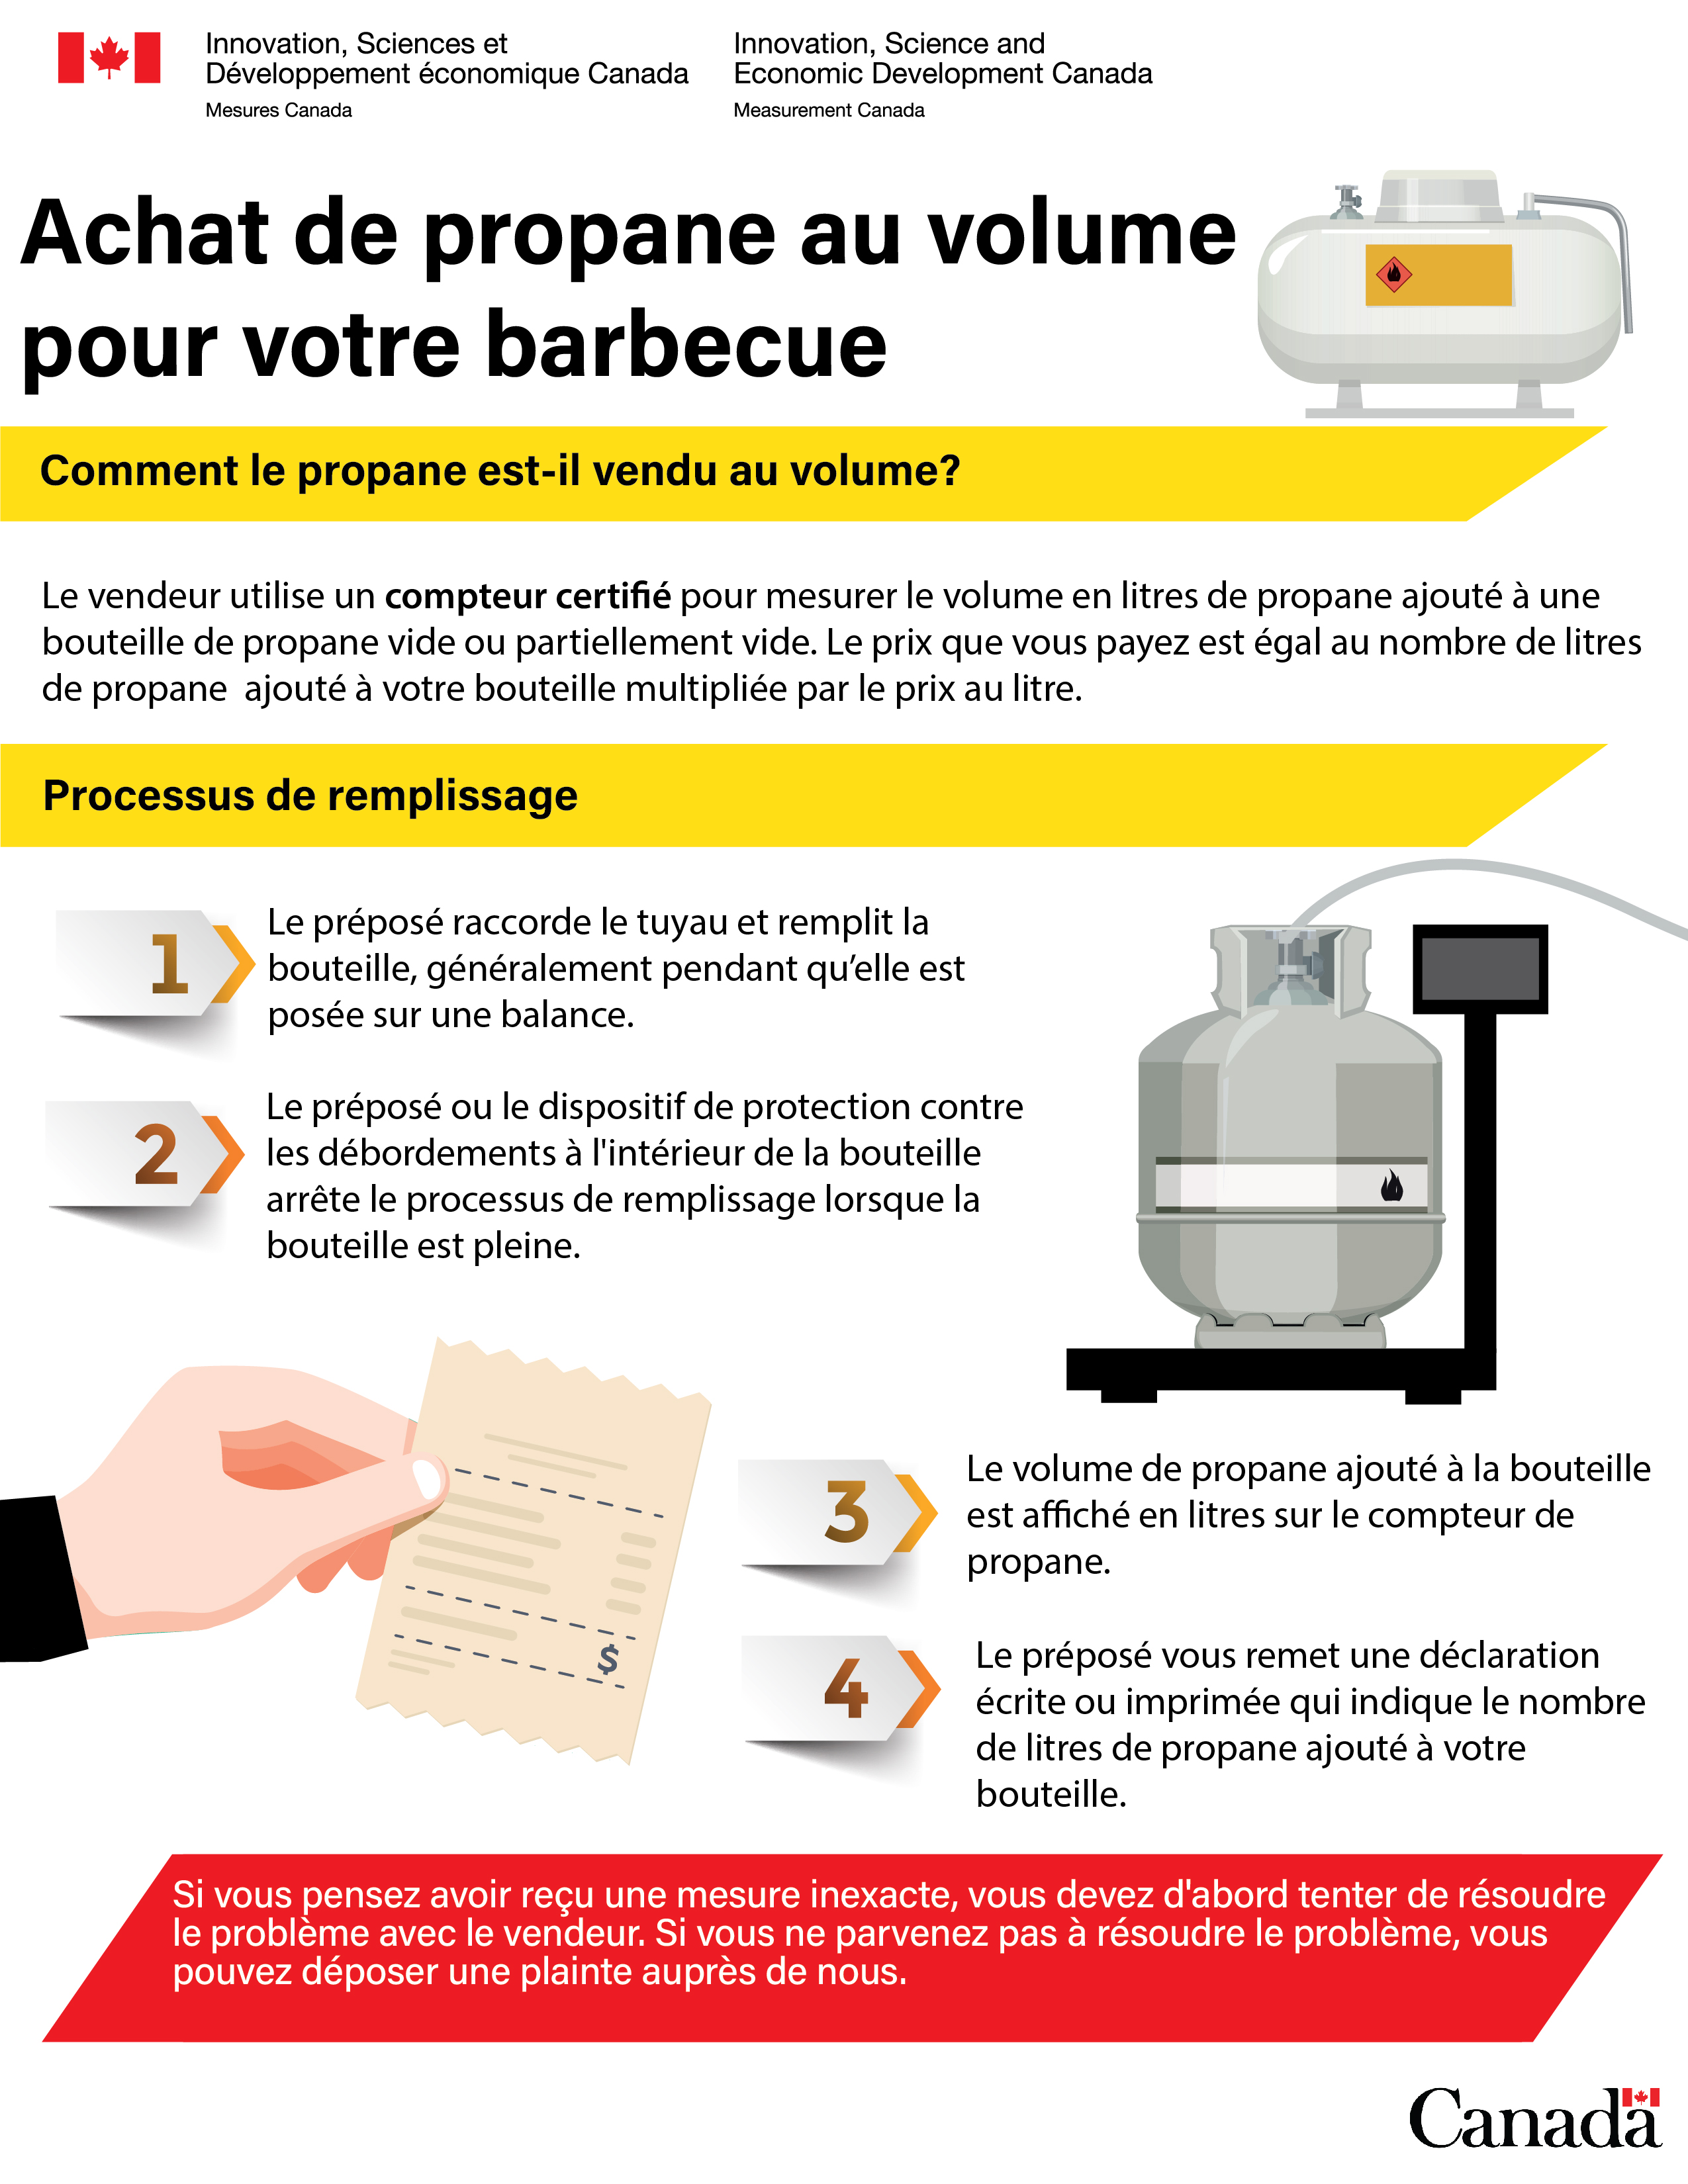 Achat de propane au volume pour votre barbecue (infographie)